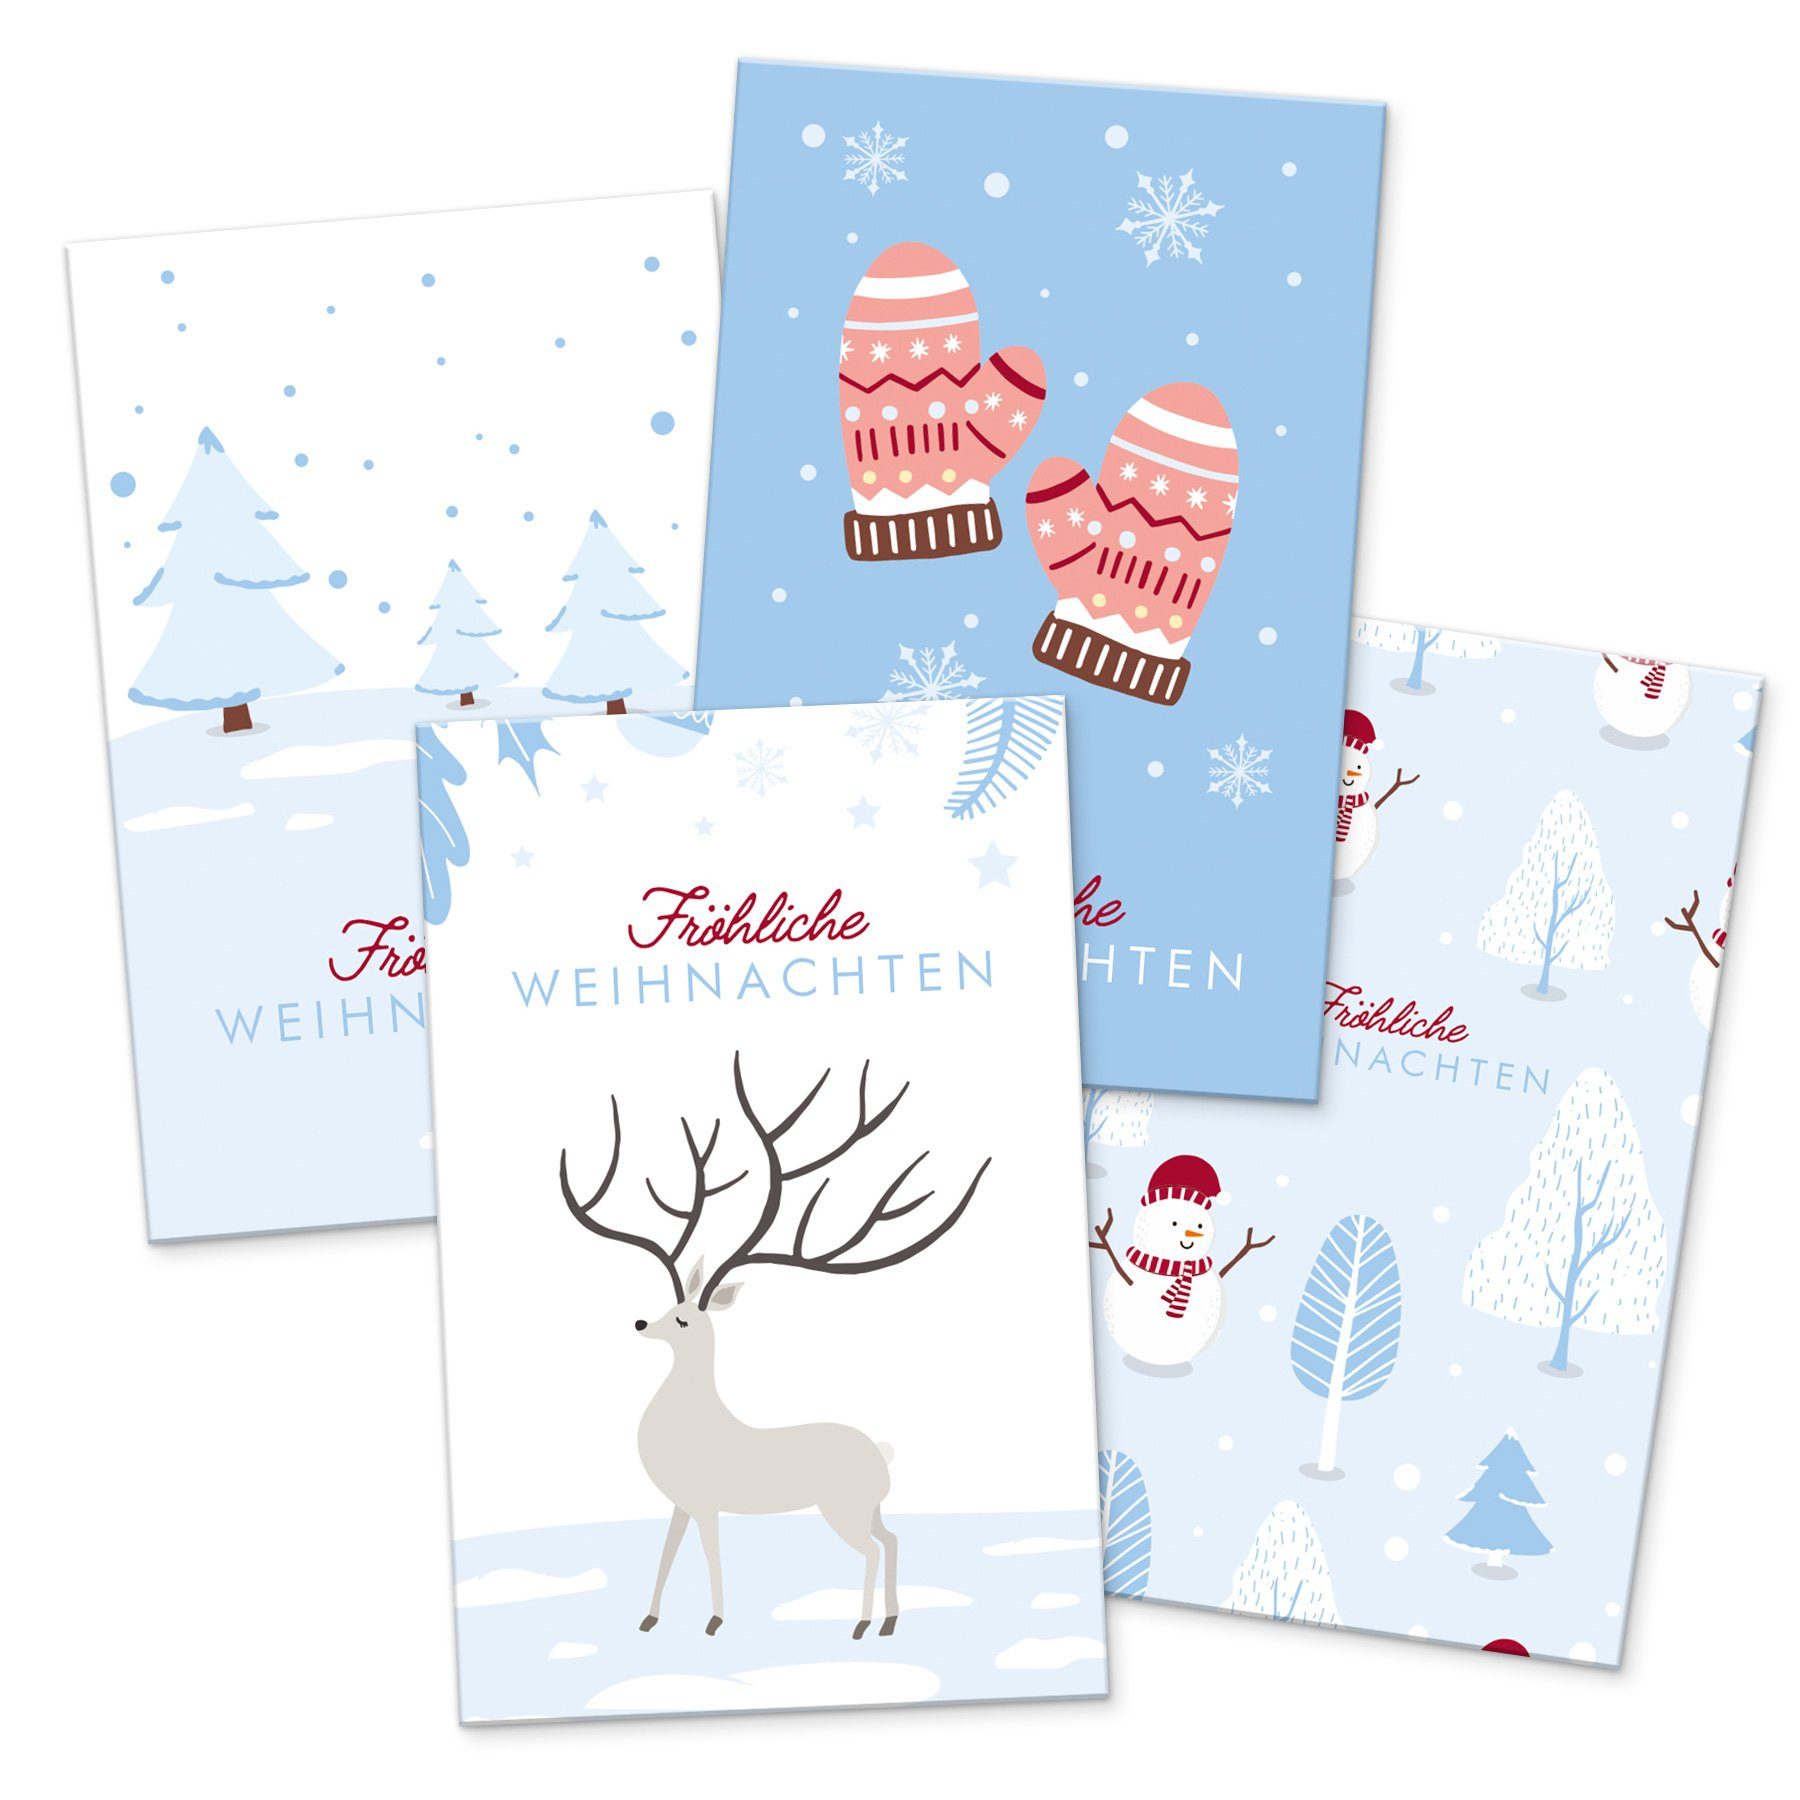 itenga Grußkarten itenga 24 x Geschenkekarten Frohe Weihnachten Winterlandschaften in Vi